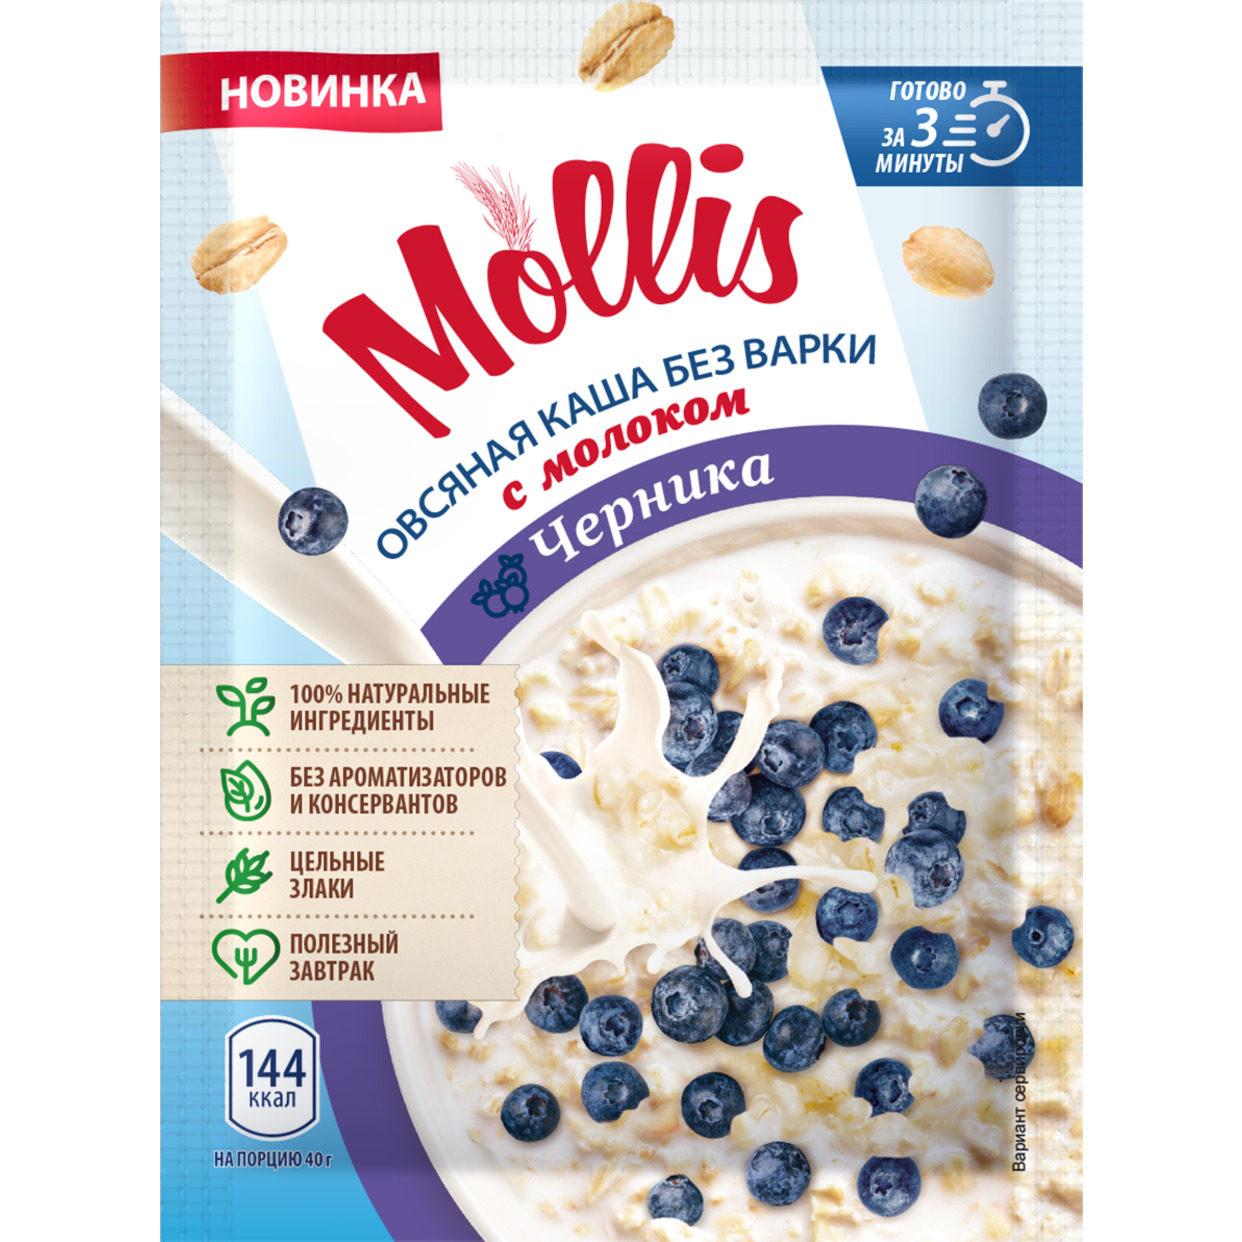 Продукт зерновой для завтрака Каша овсяная с черникой и молоком т/м Mollis 40гр.